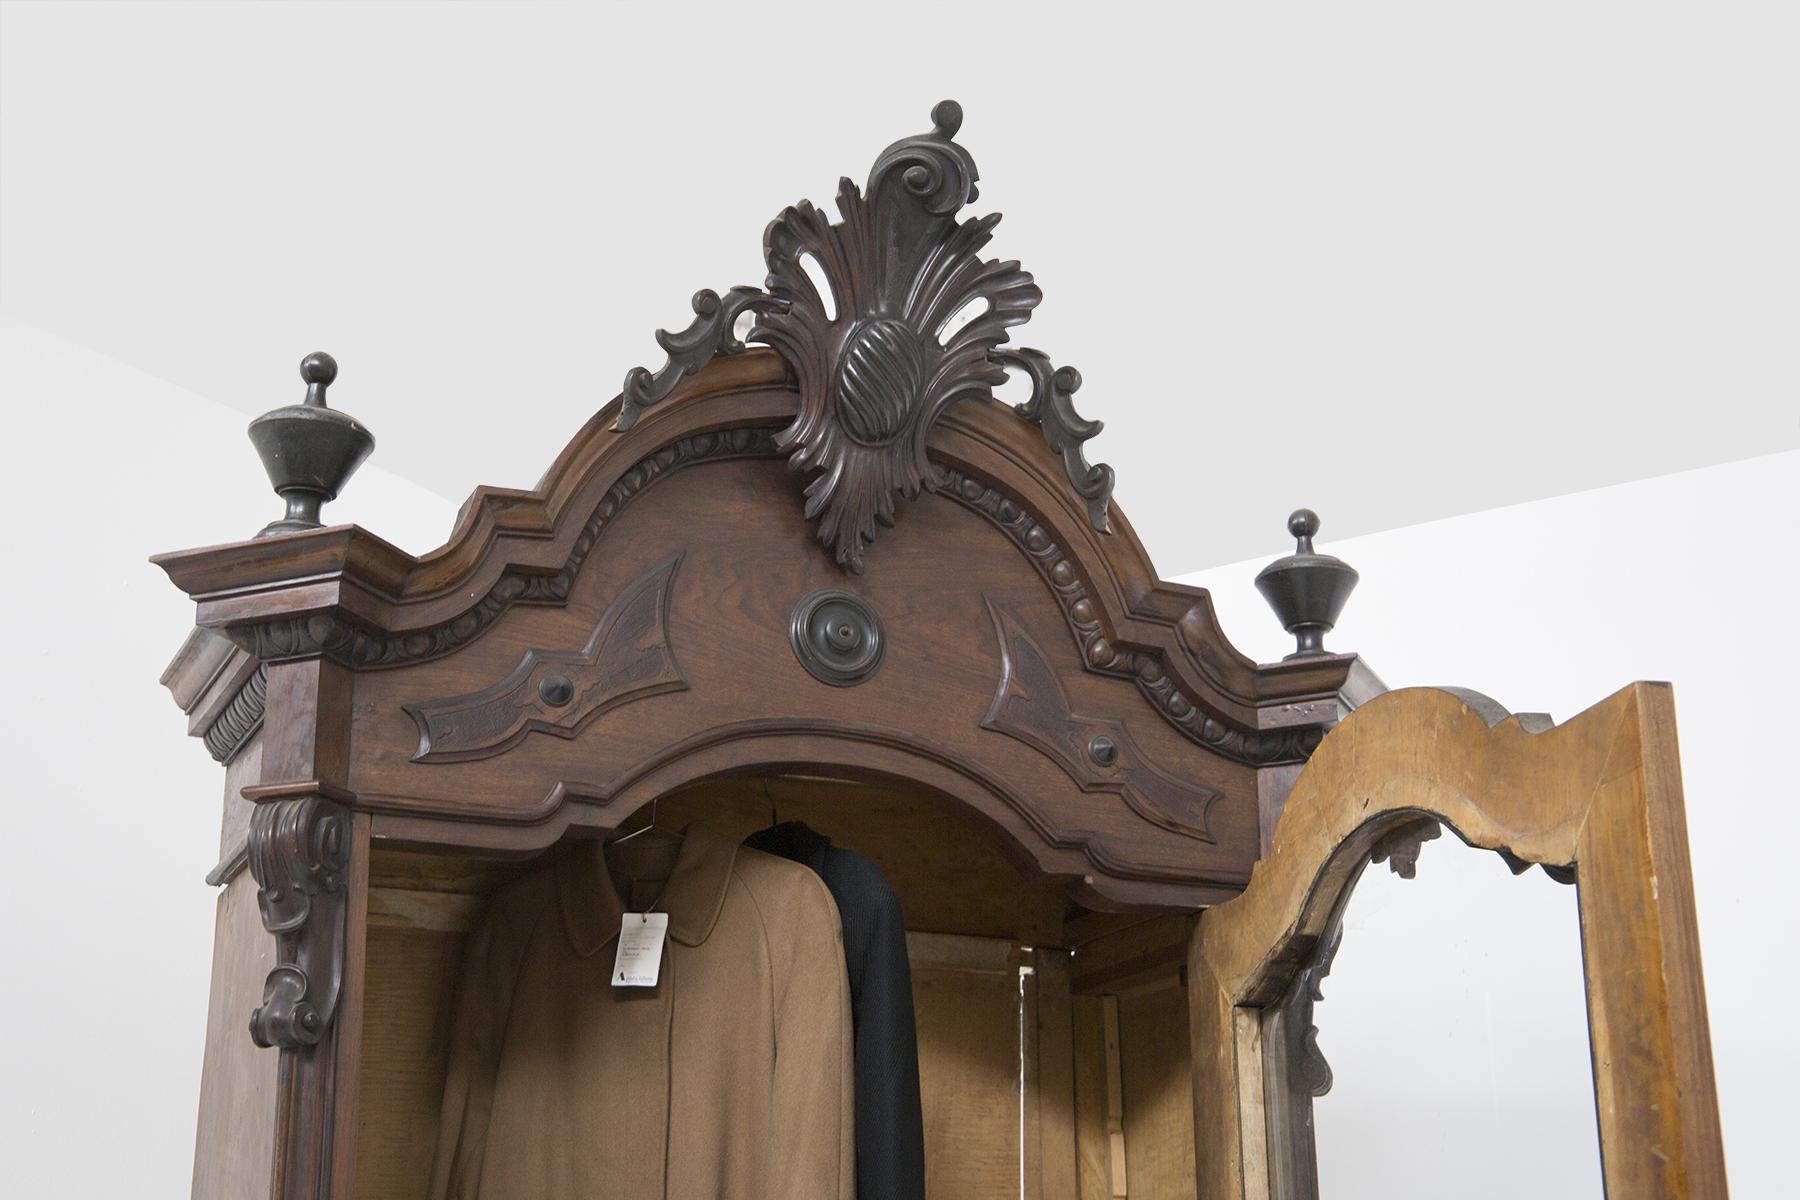 Très rare armoire ancienne datant de la période rococo des années 1700, en bois de noyer avec des détails en laiton, très élégante, belle fabrication italienne.
L'armoire ancienne est entièrement réalisée en bois de noyer de la meilleure